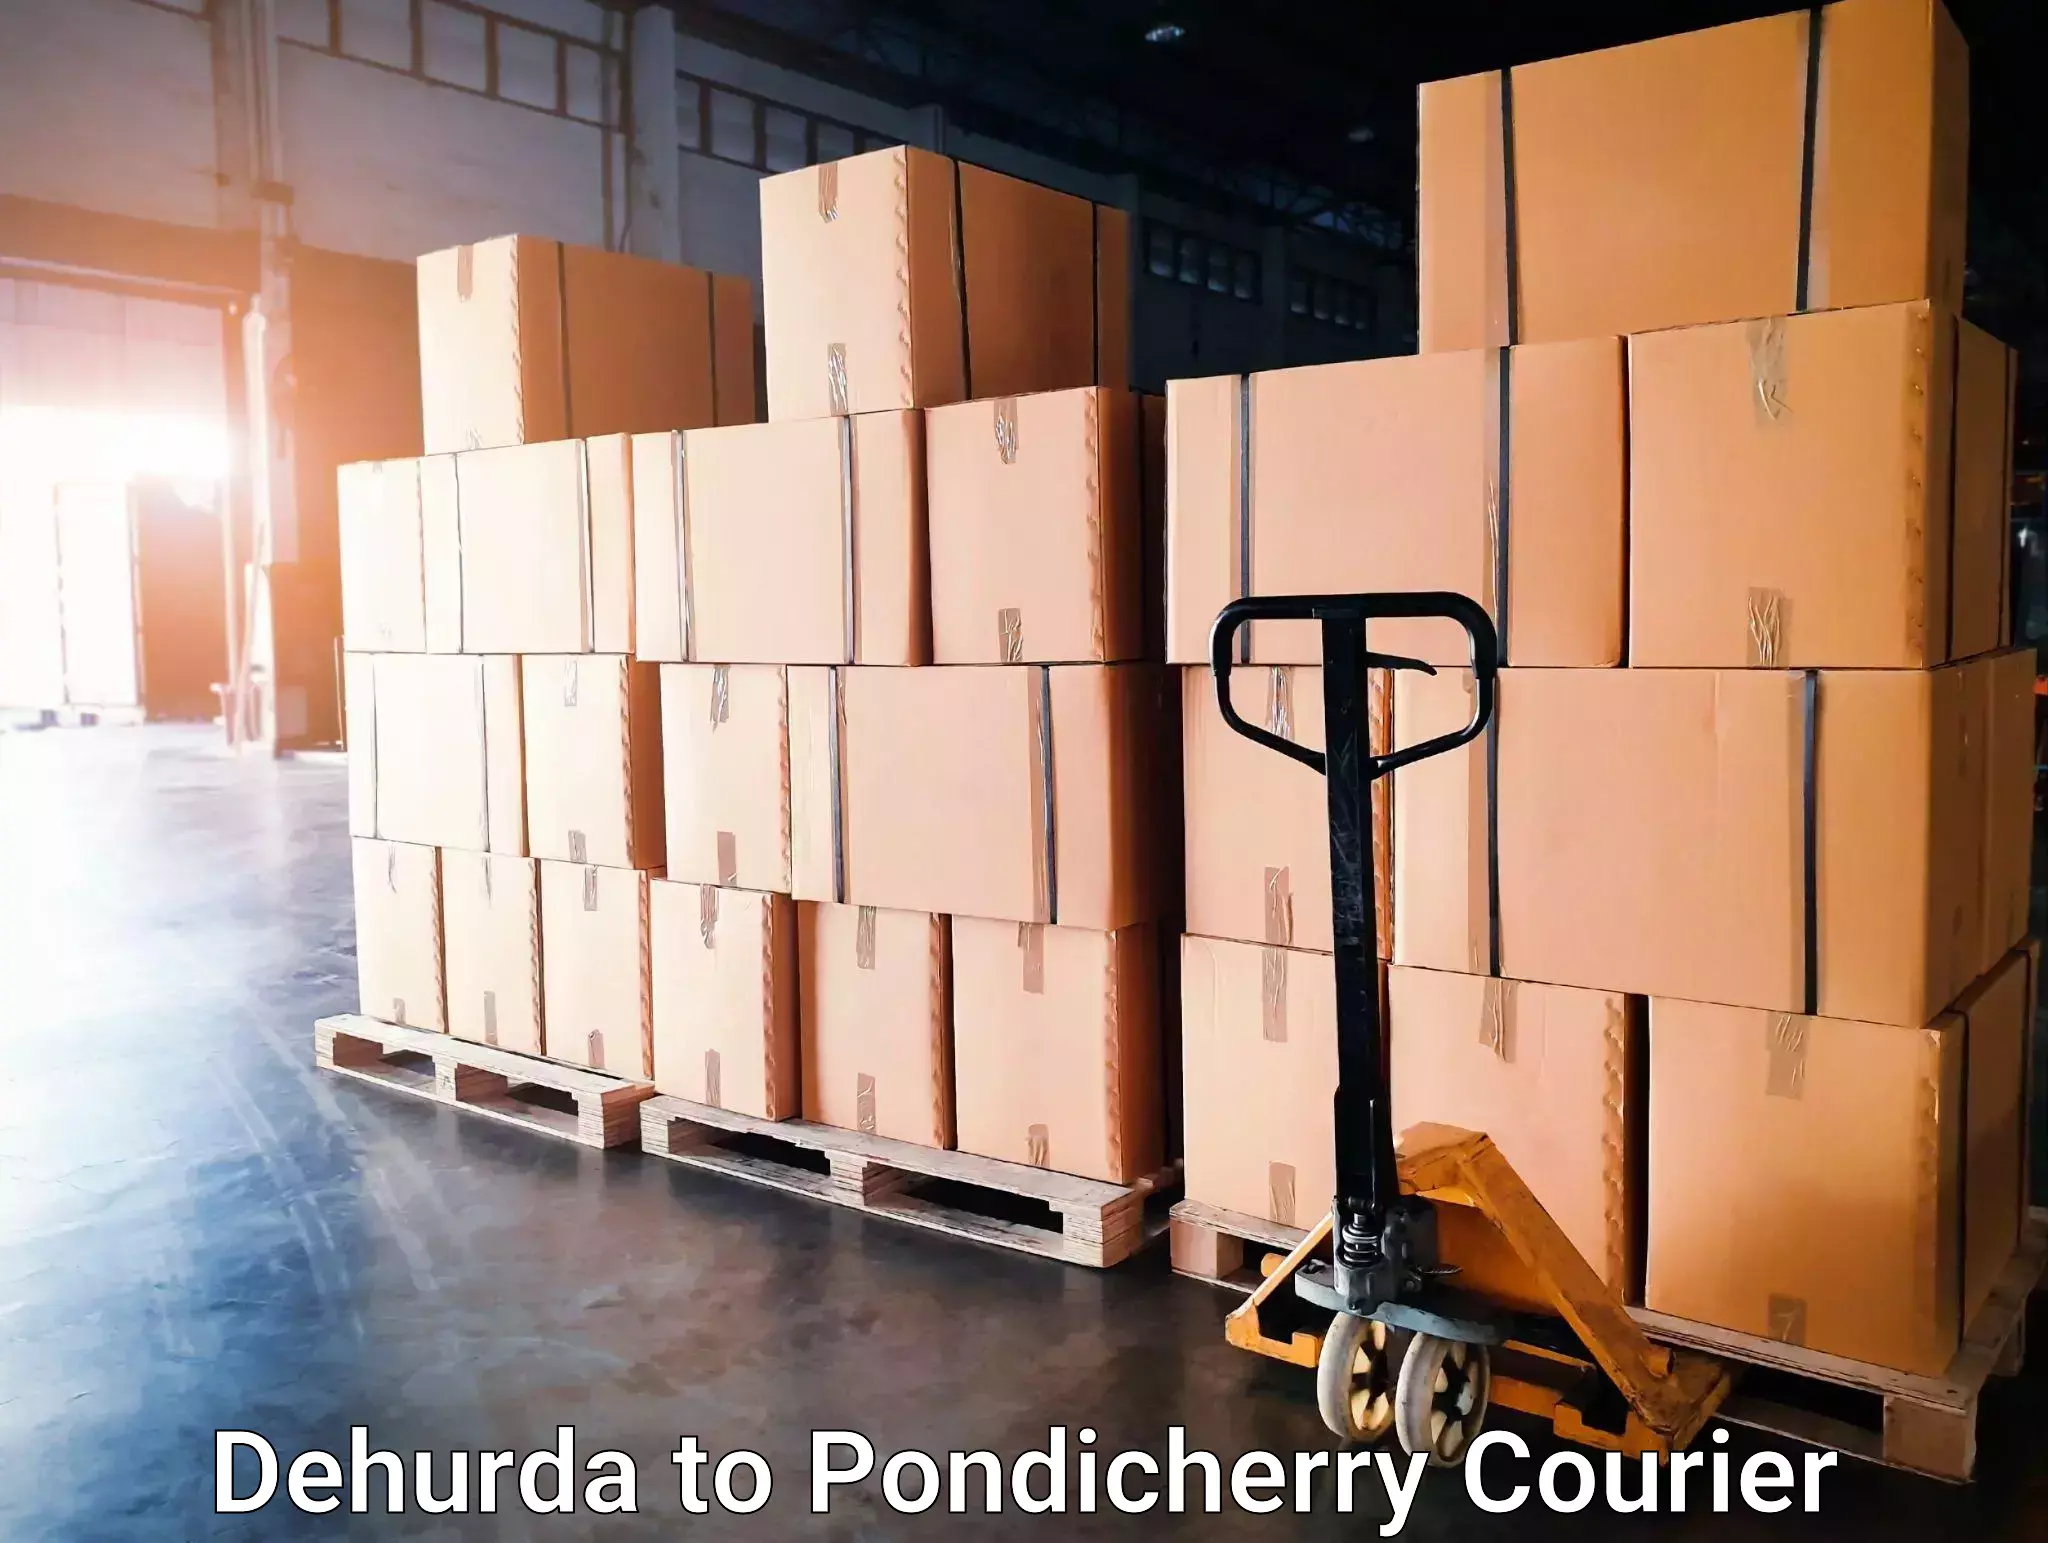 Business courier solutions Dehurda to Pondicherry